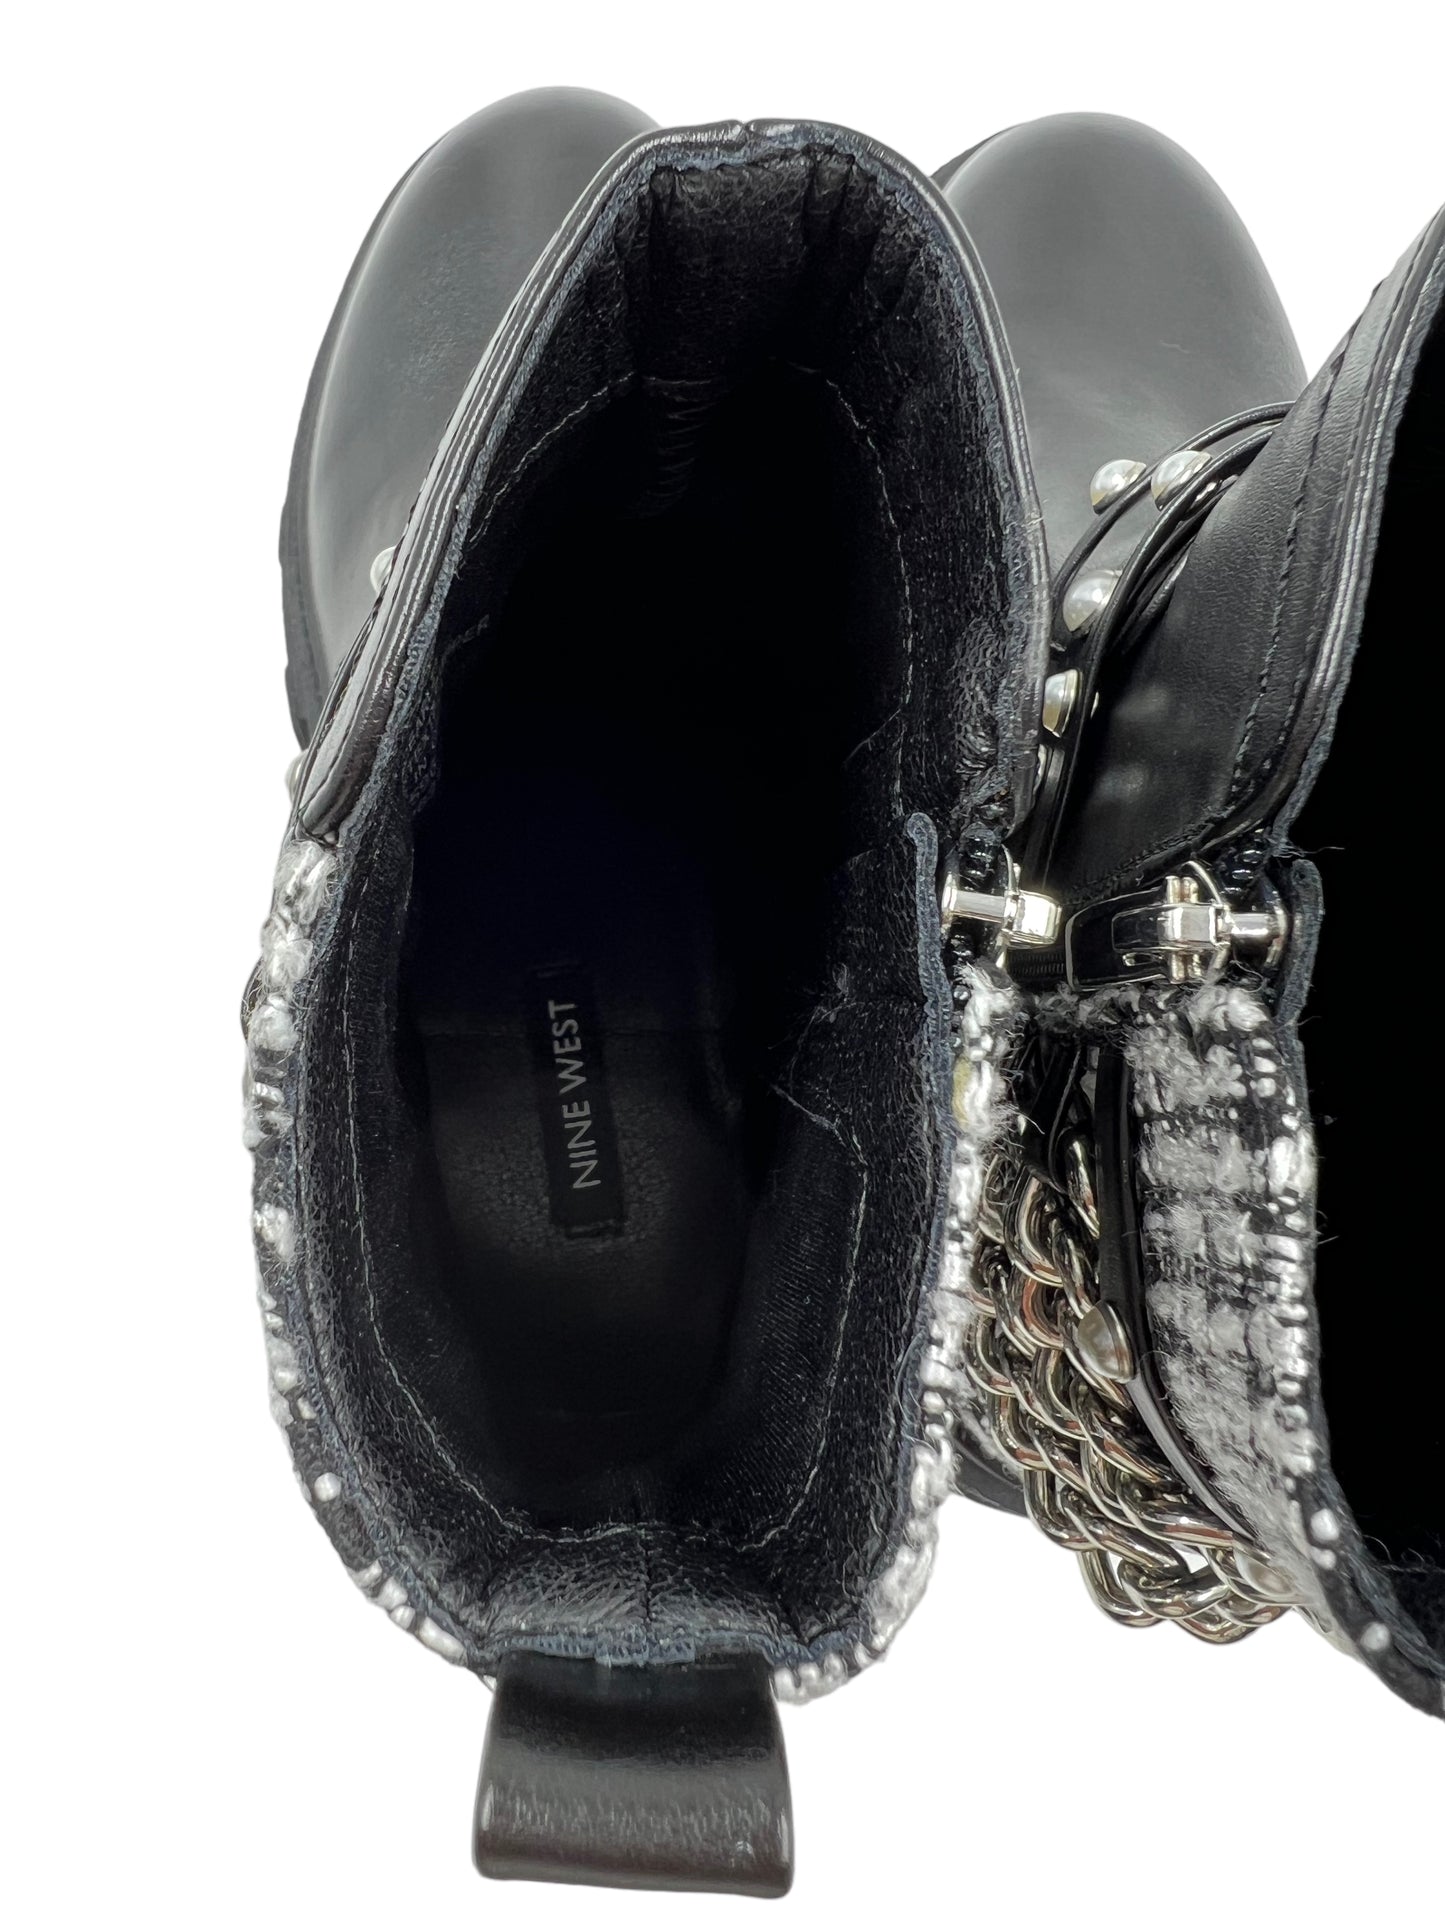 Nine West Size 8 Black Cearlz3 Embellished Tweed Ankle Boots